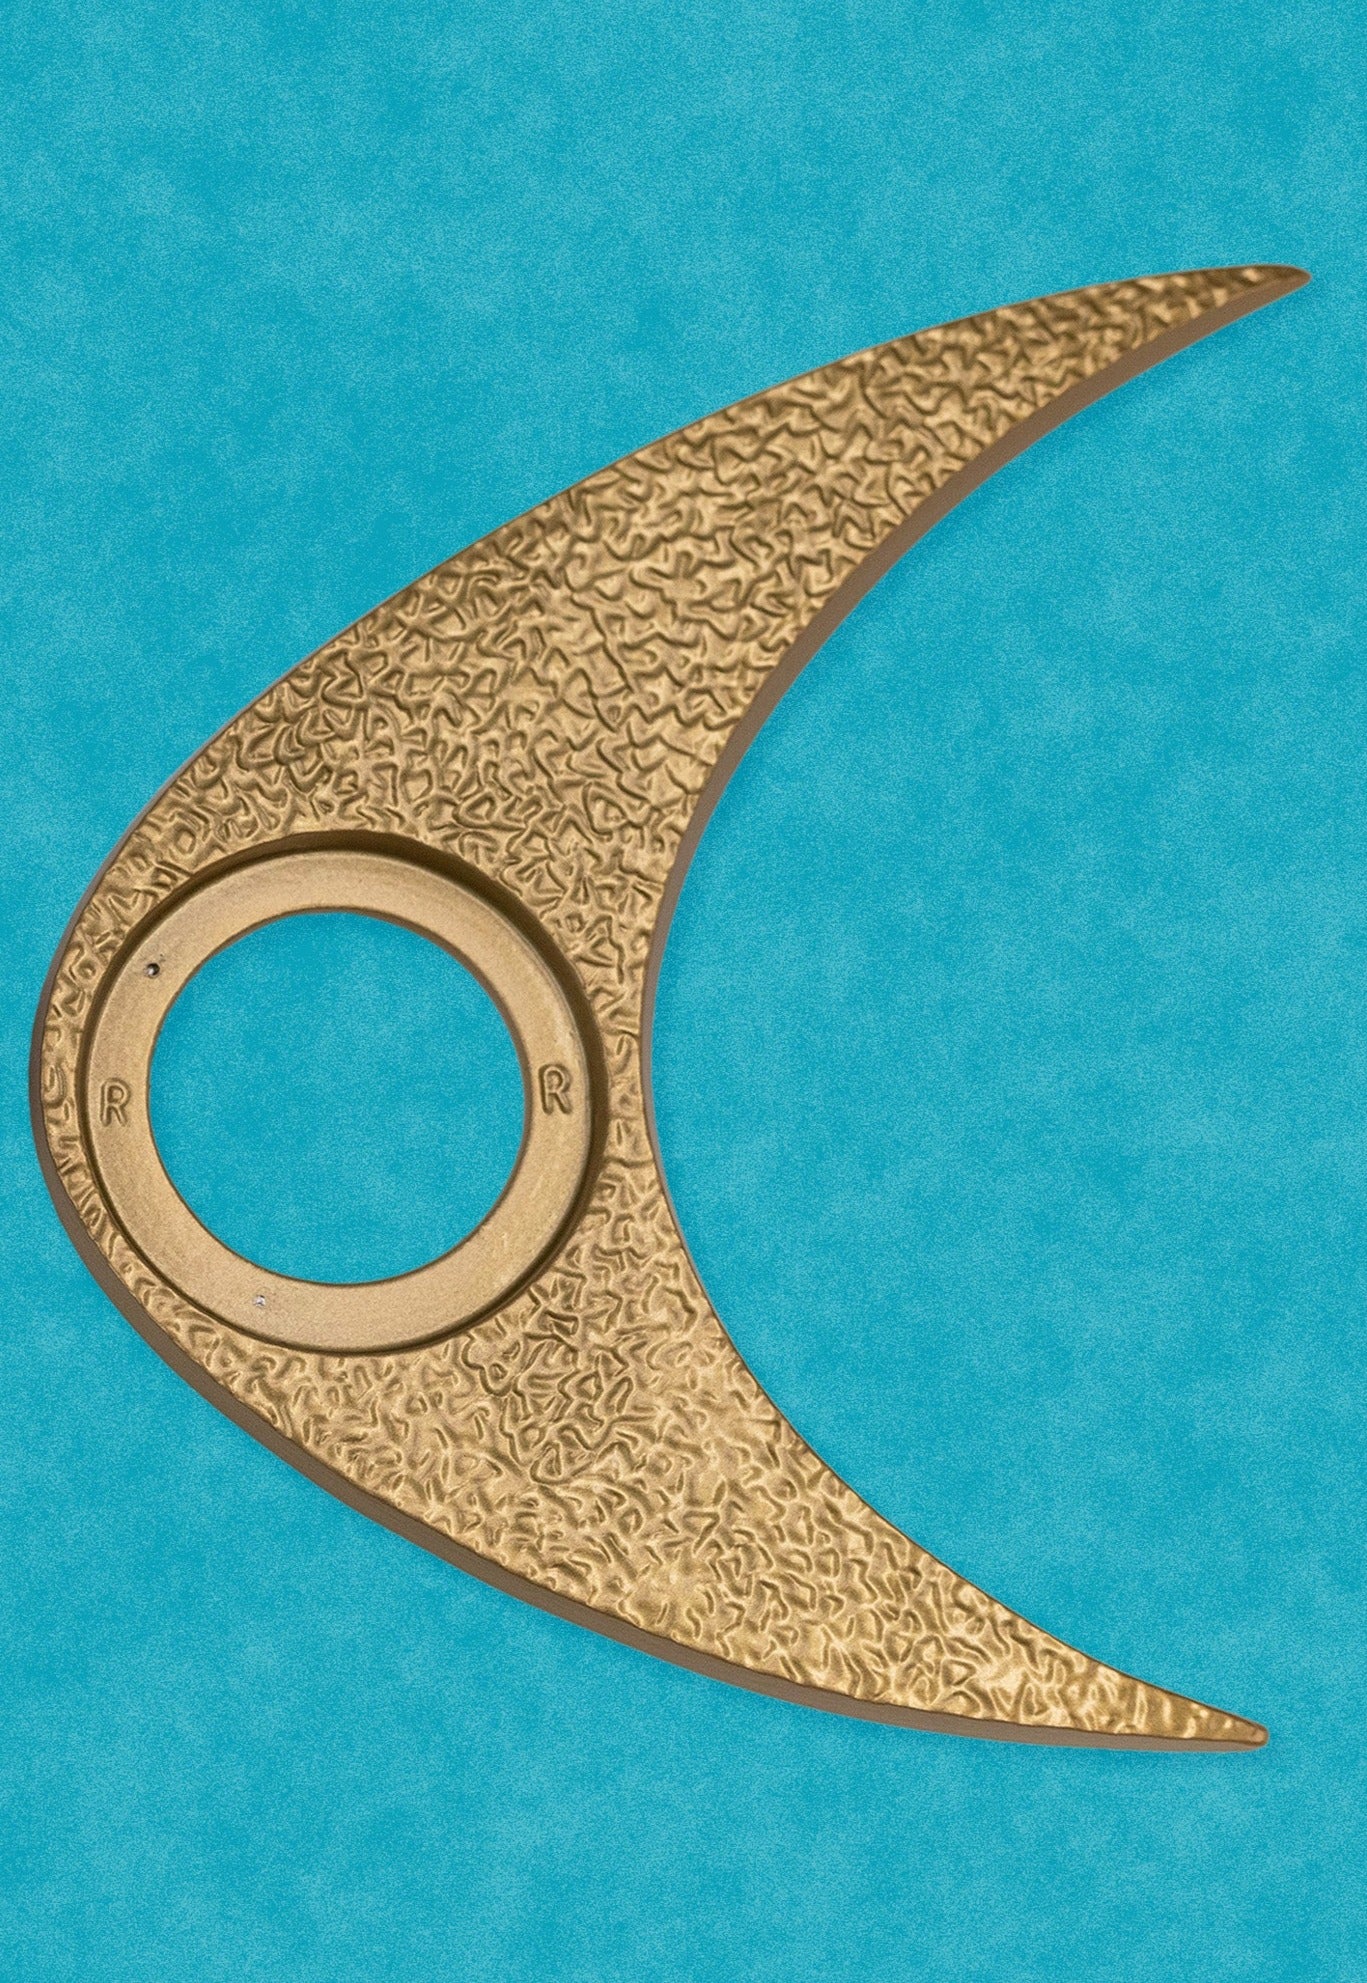 Boomerang Doorknob Escutcheon